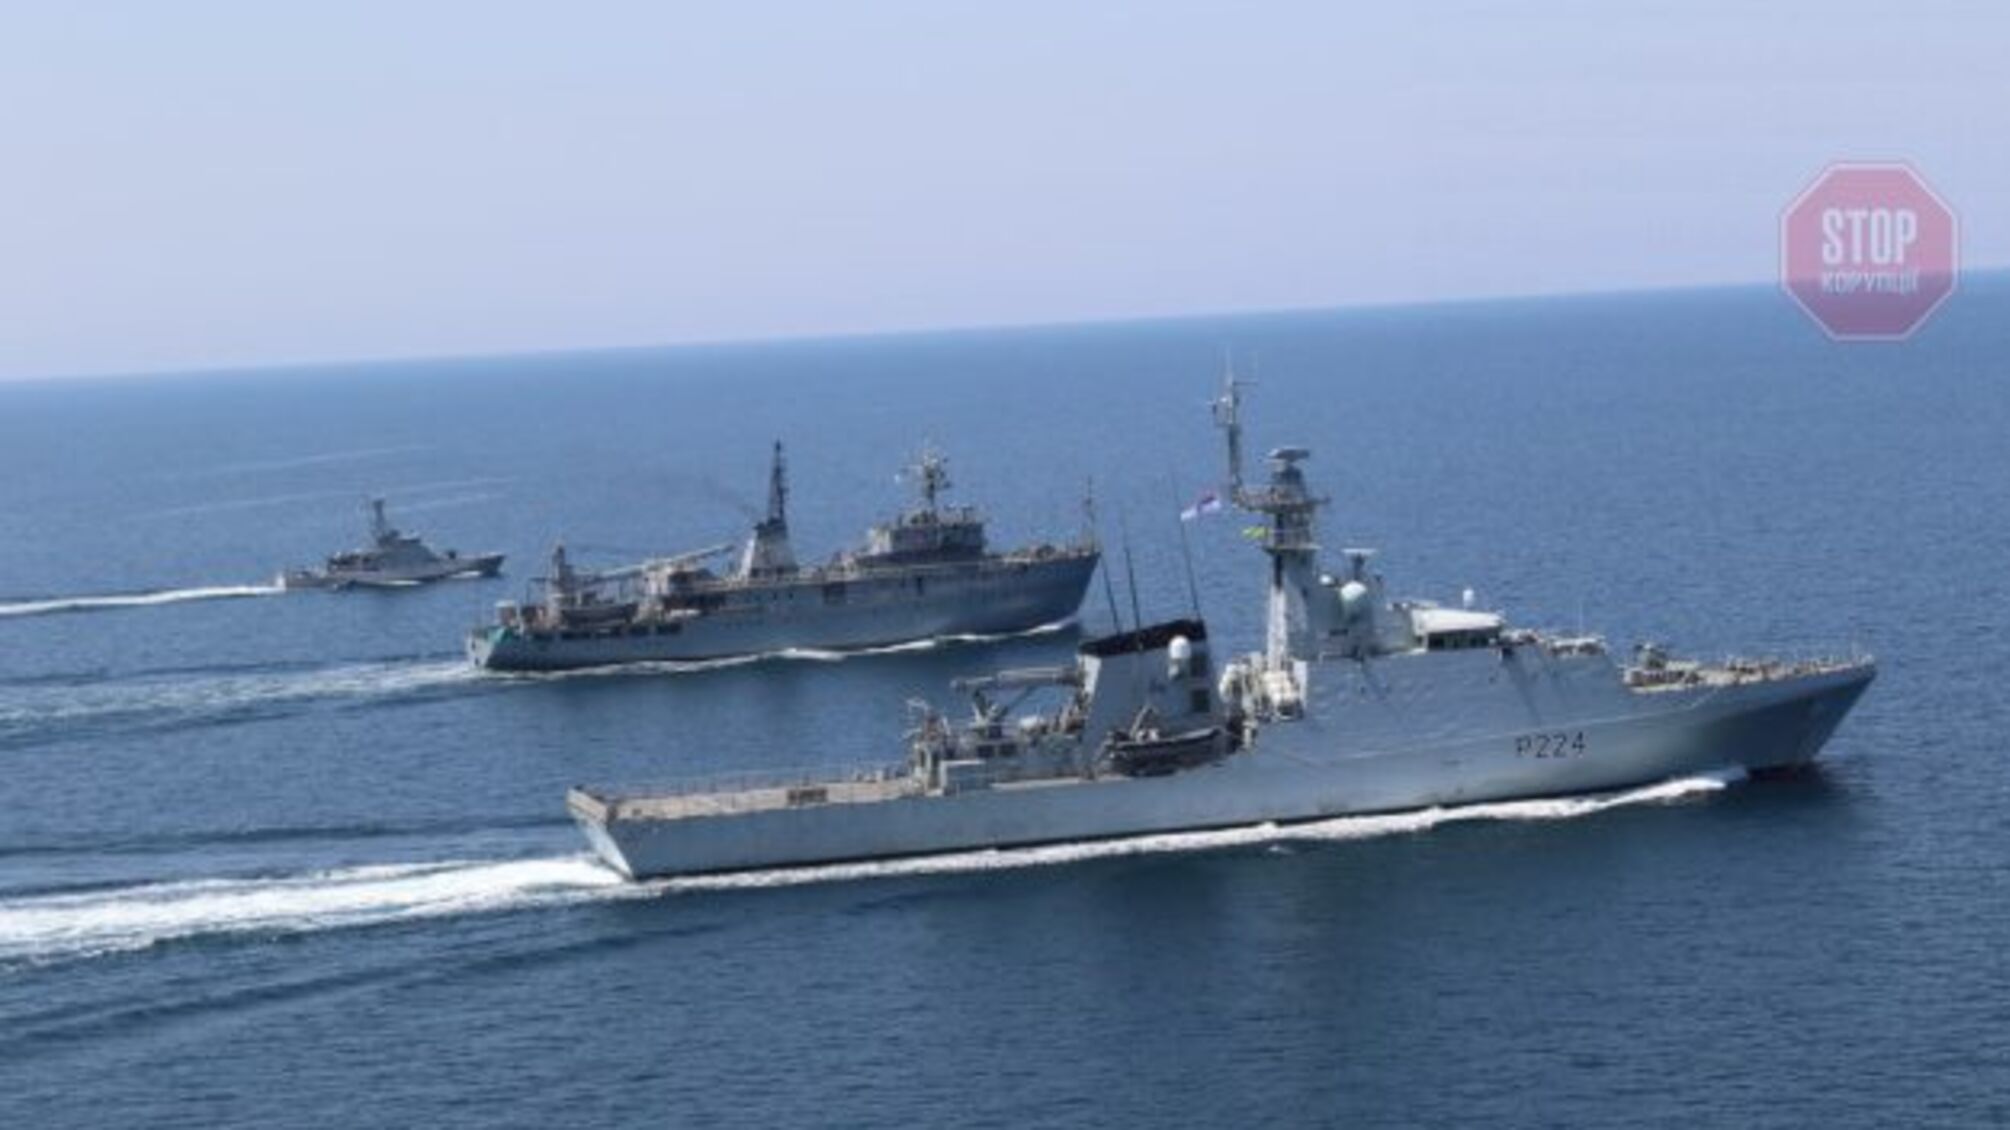 ВМС: У Чорному морі росіяни хочуть використати цивільний корабель як живий щит 